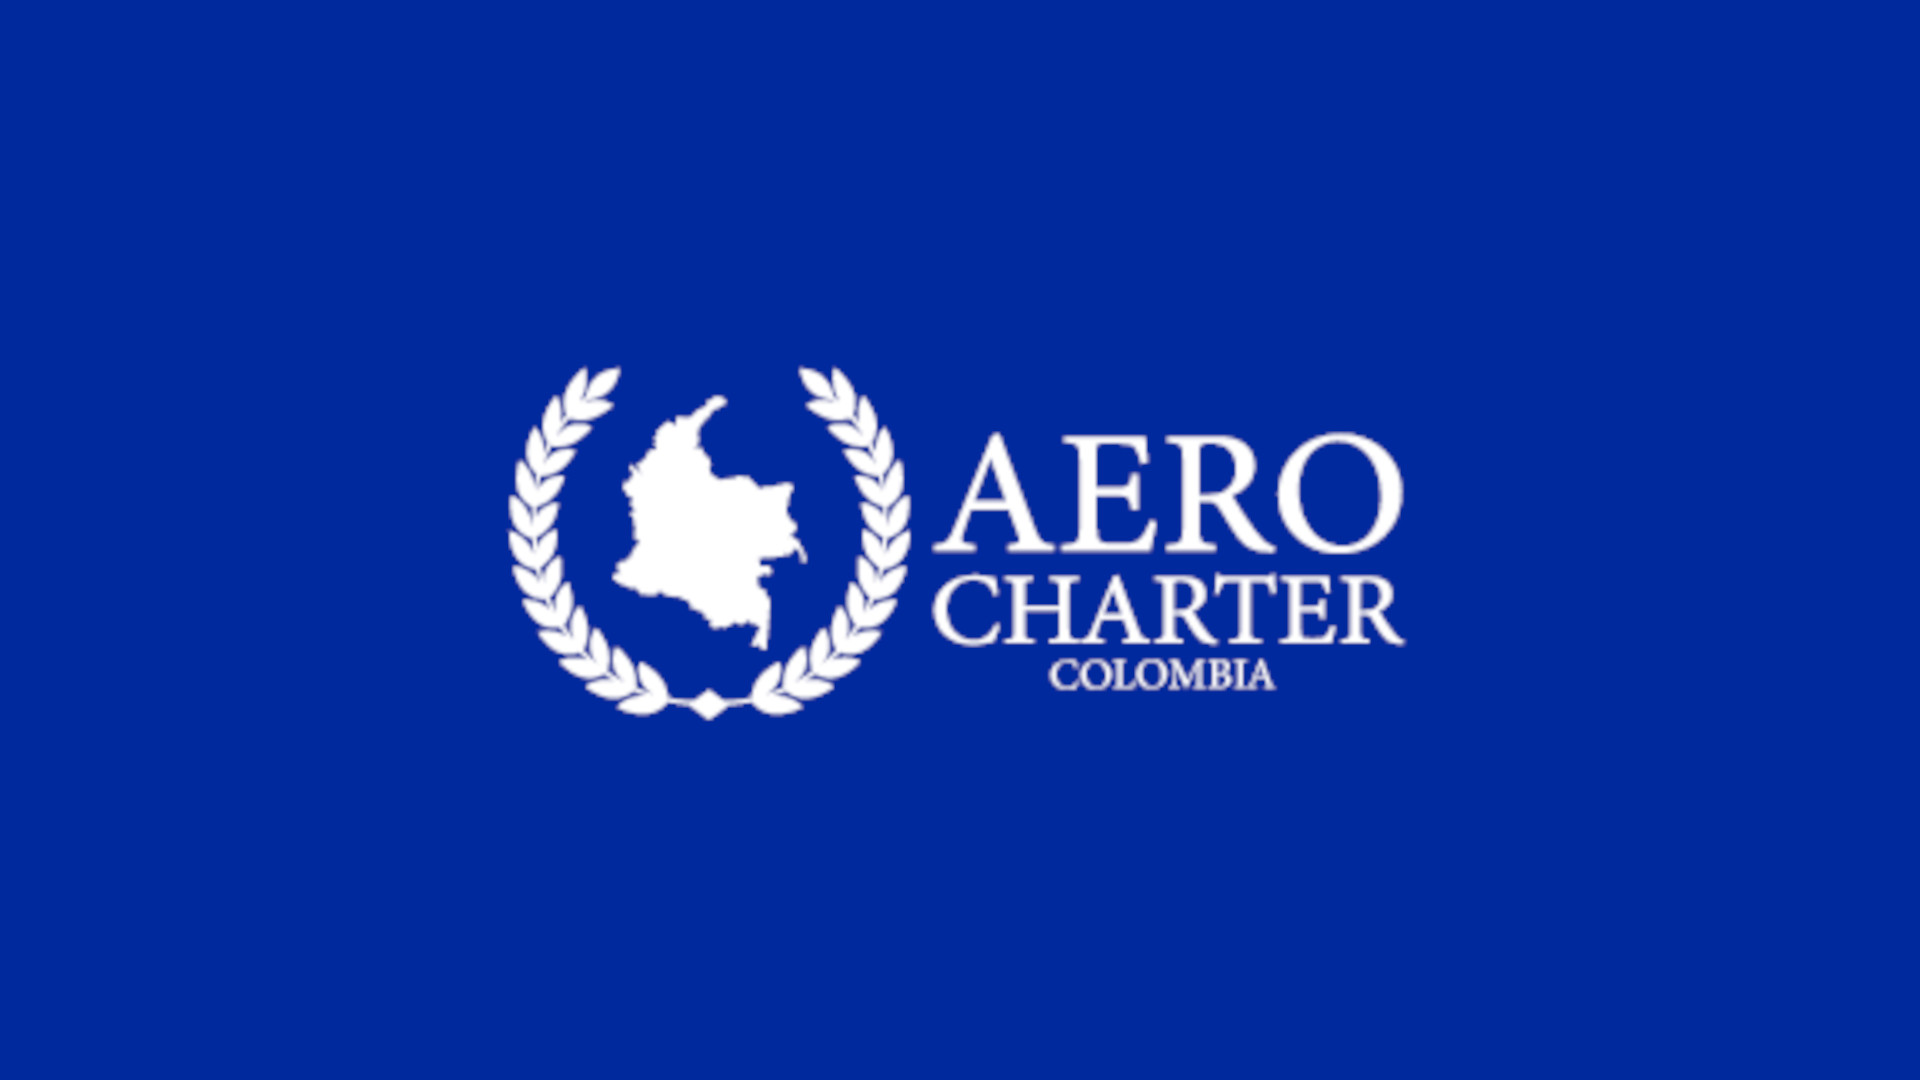 Aerocharter Colombia